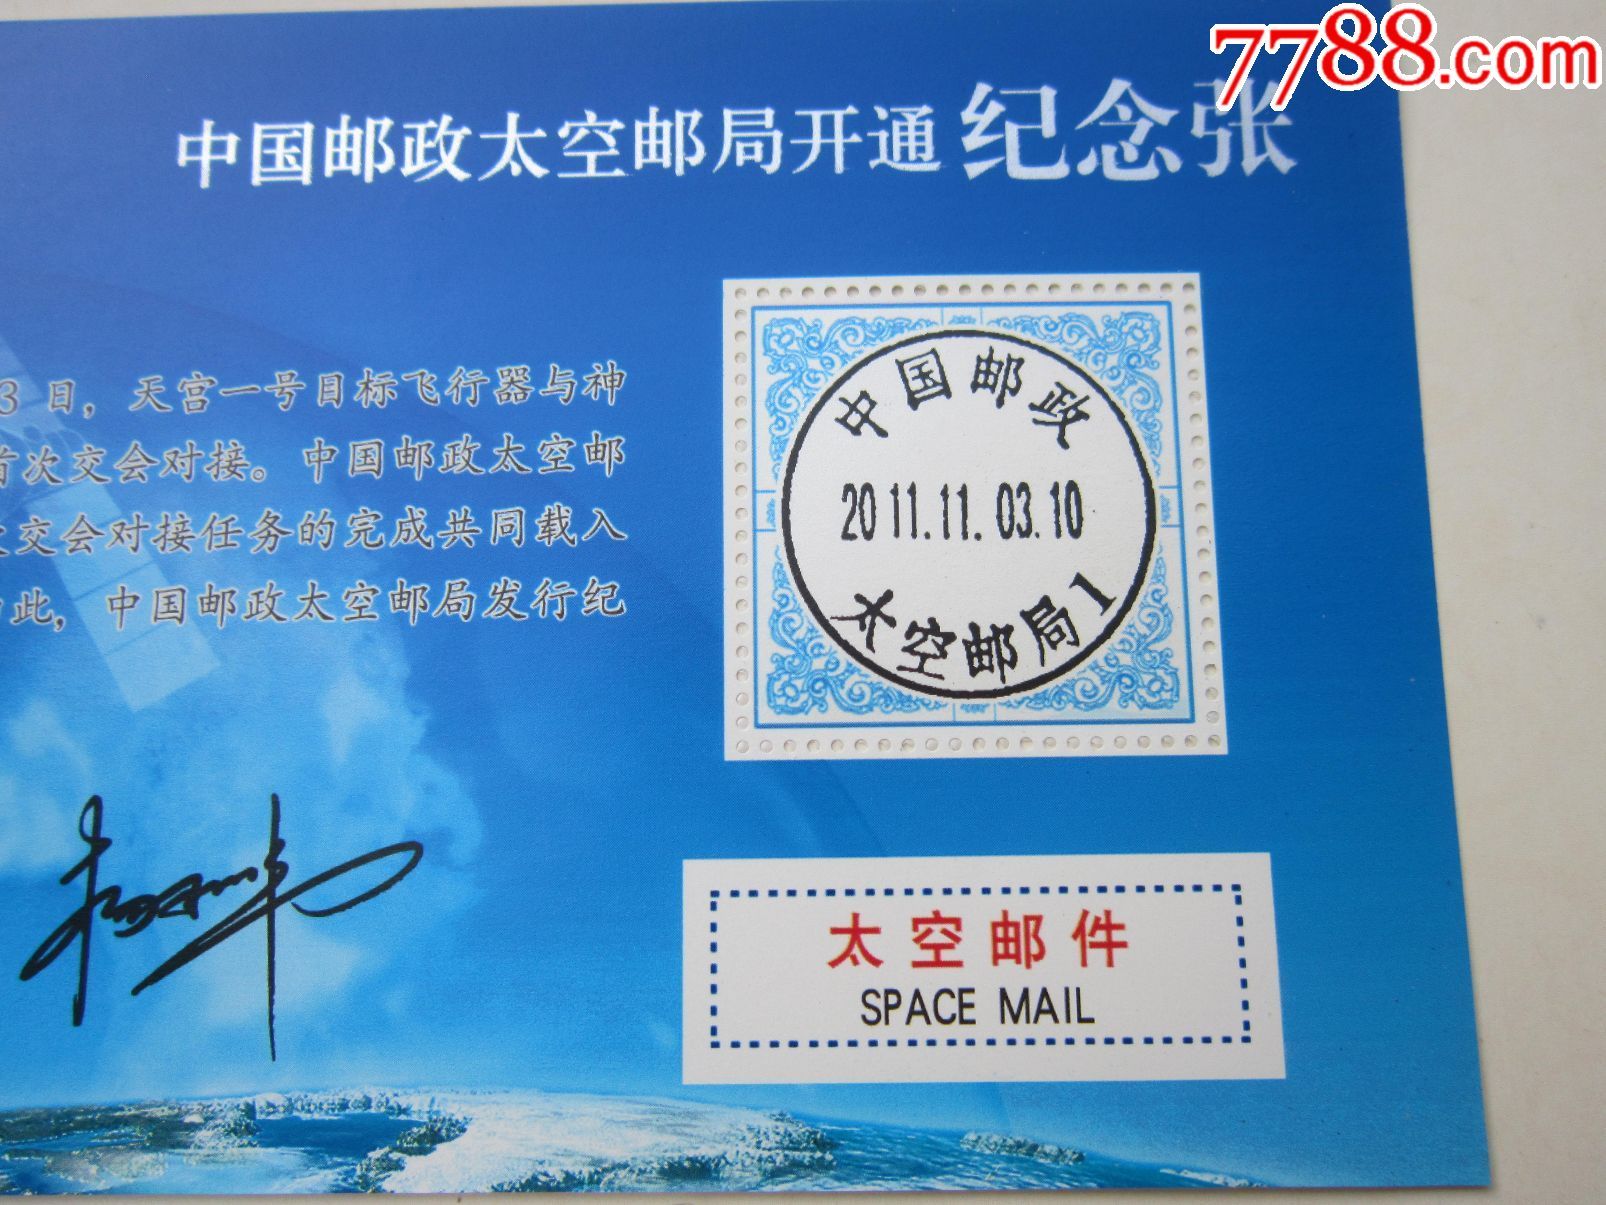 中国邮政太空邮局开通纪念张